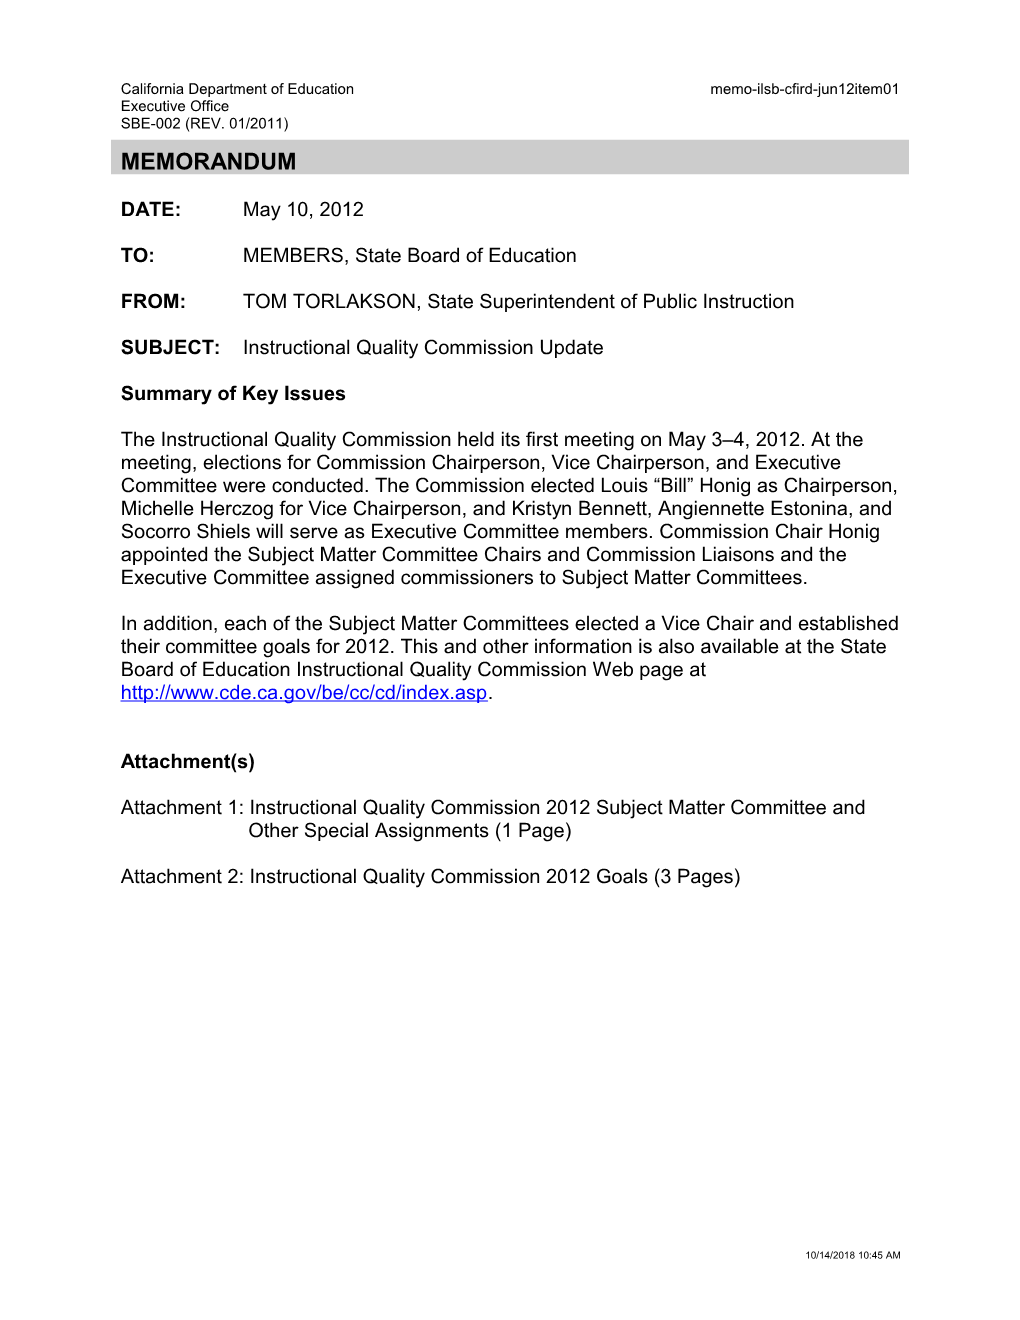 June 2012 Memorandum CFIRD Item 1 - Information Memorandum (CA State Board of Education)